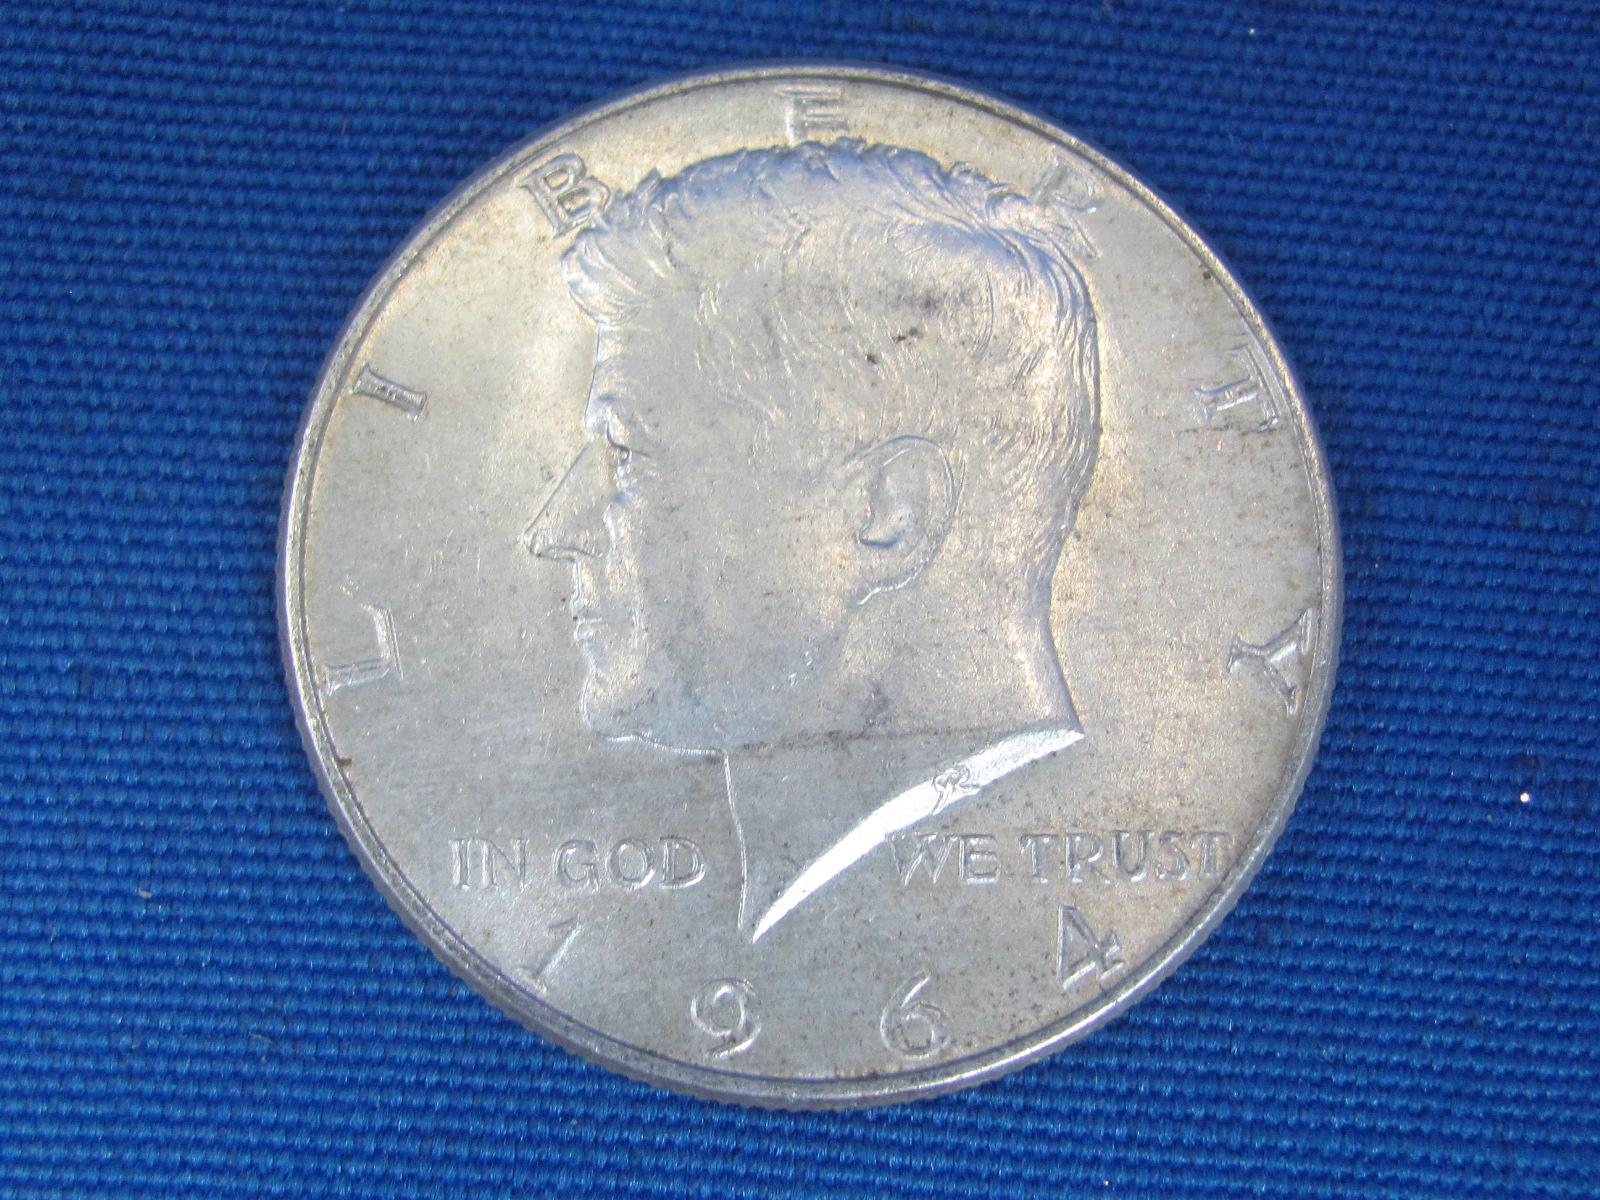 5 1964 Kennedy Half Dollars